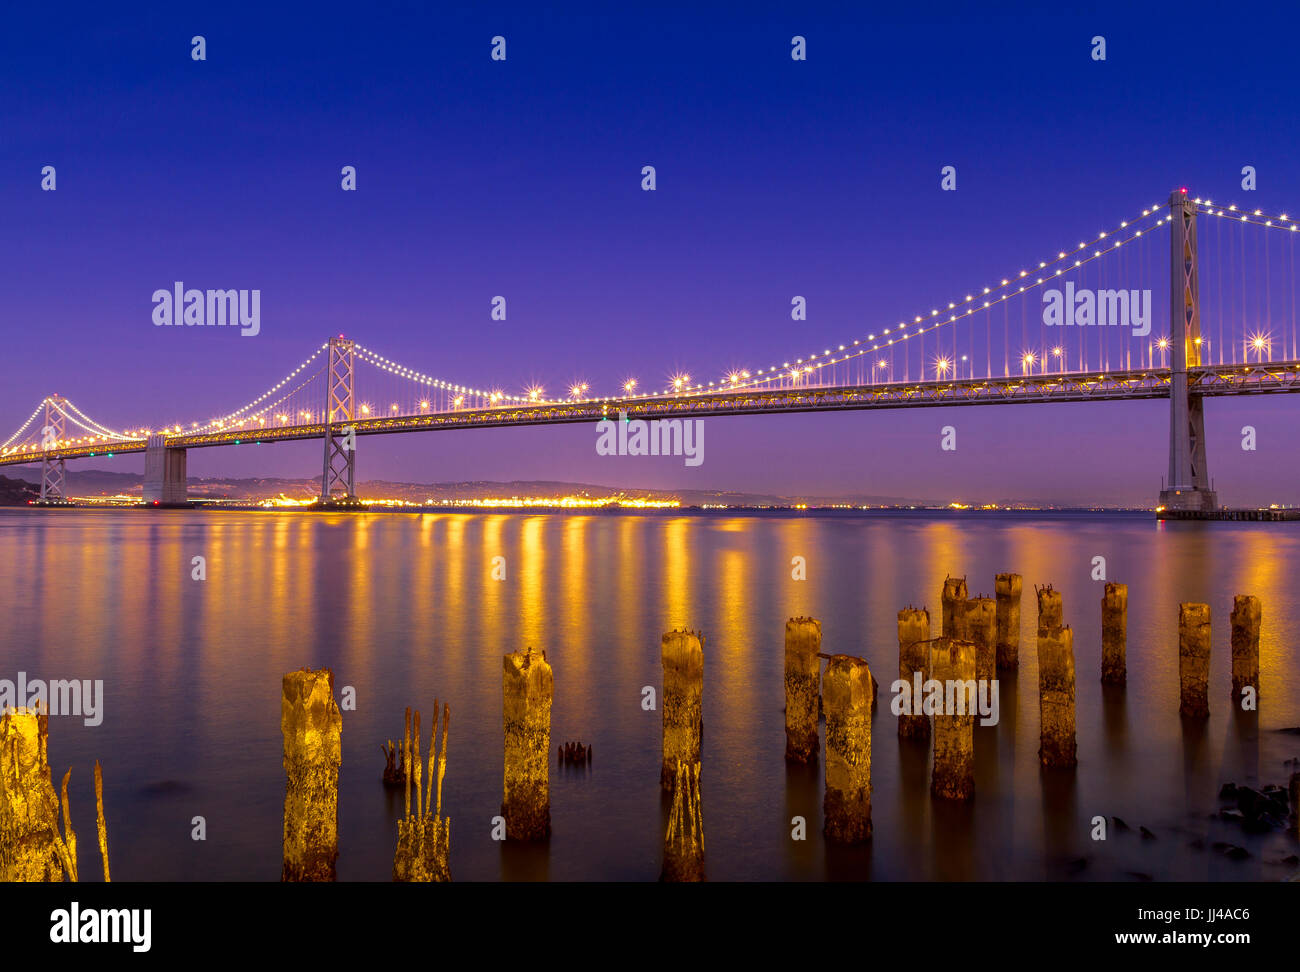 Le pont de la baie d'Oakland la nuit. Le pont relie Oakland à San Francisco, San Francisco, Californie, États-Unis Banque D'Images